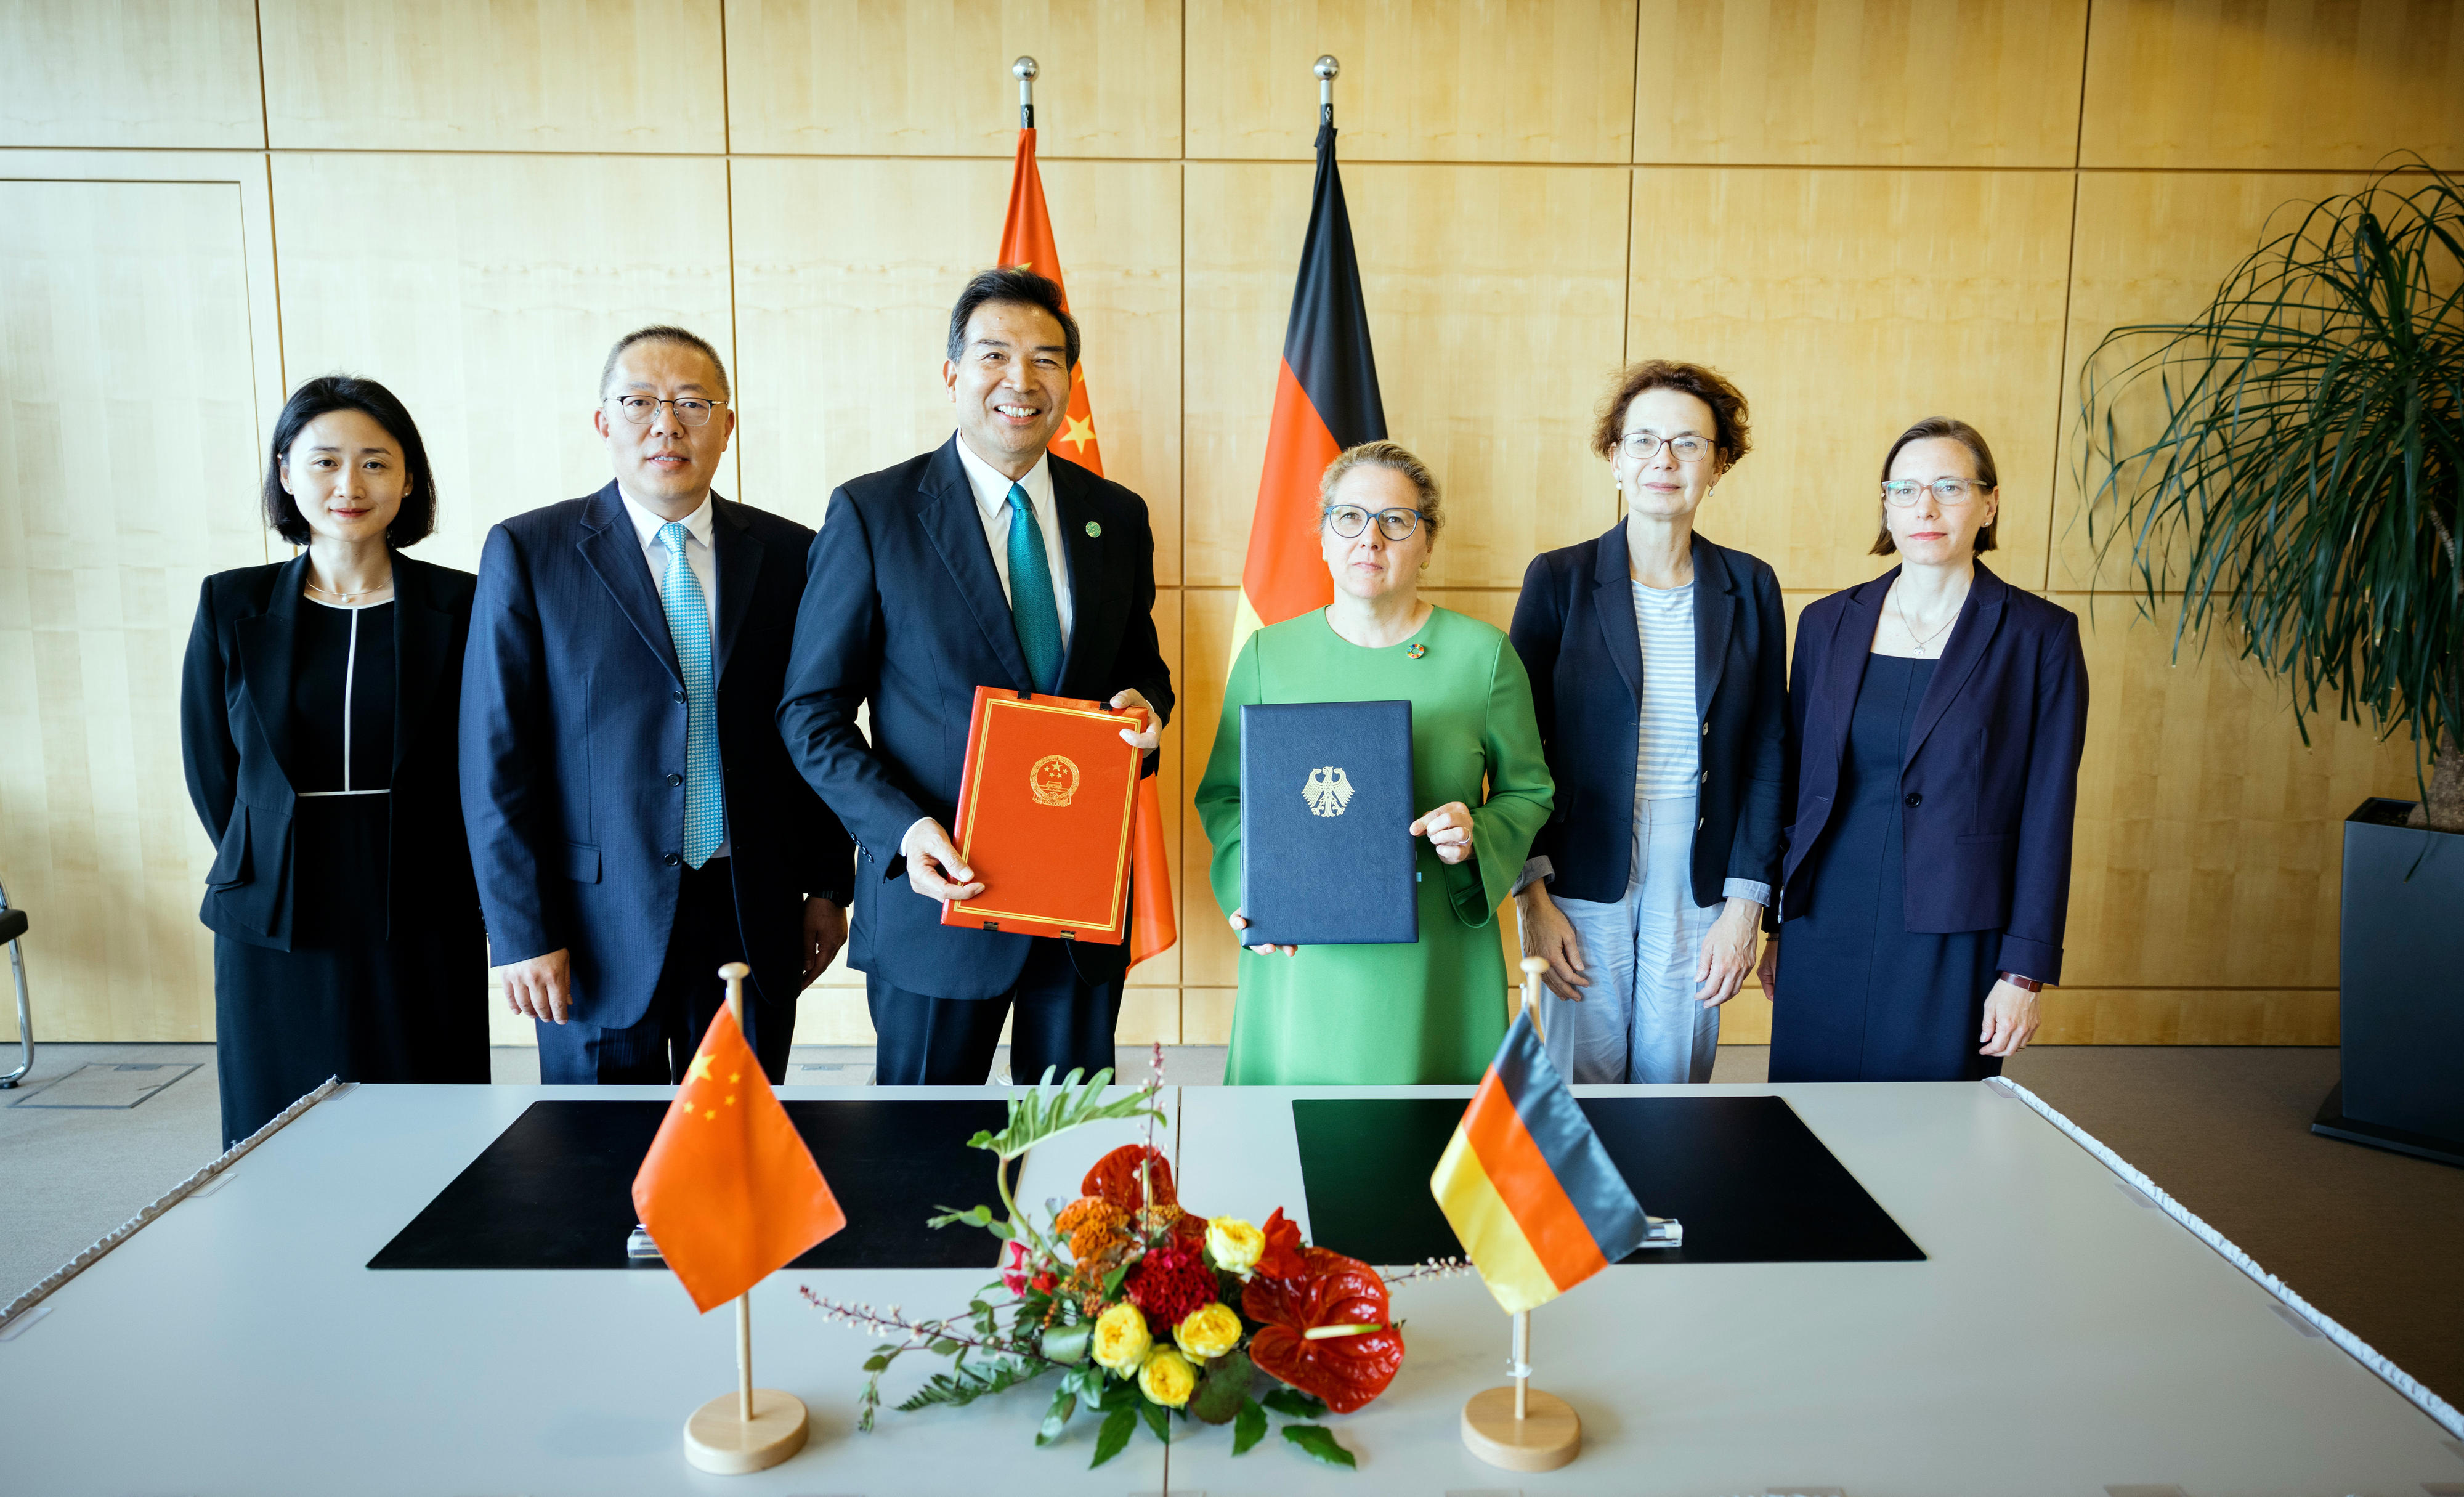 Entwicklungsministerin Svenja Schulze und Luo Zhaohui, Vorsitzenden der chinesischen Entwicklungsagentur CIDCA sowie Mitglieder der deutschen und chinesischen Delegation bei der Unterzeichnung des gemeinsamen Aktionsplans in Berlin